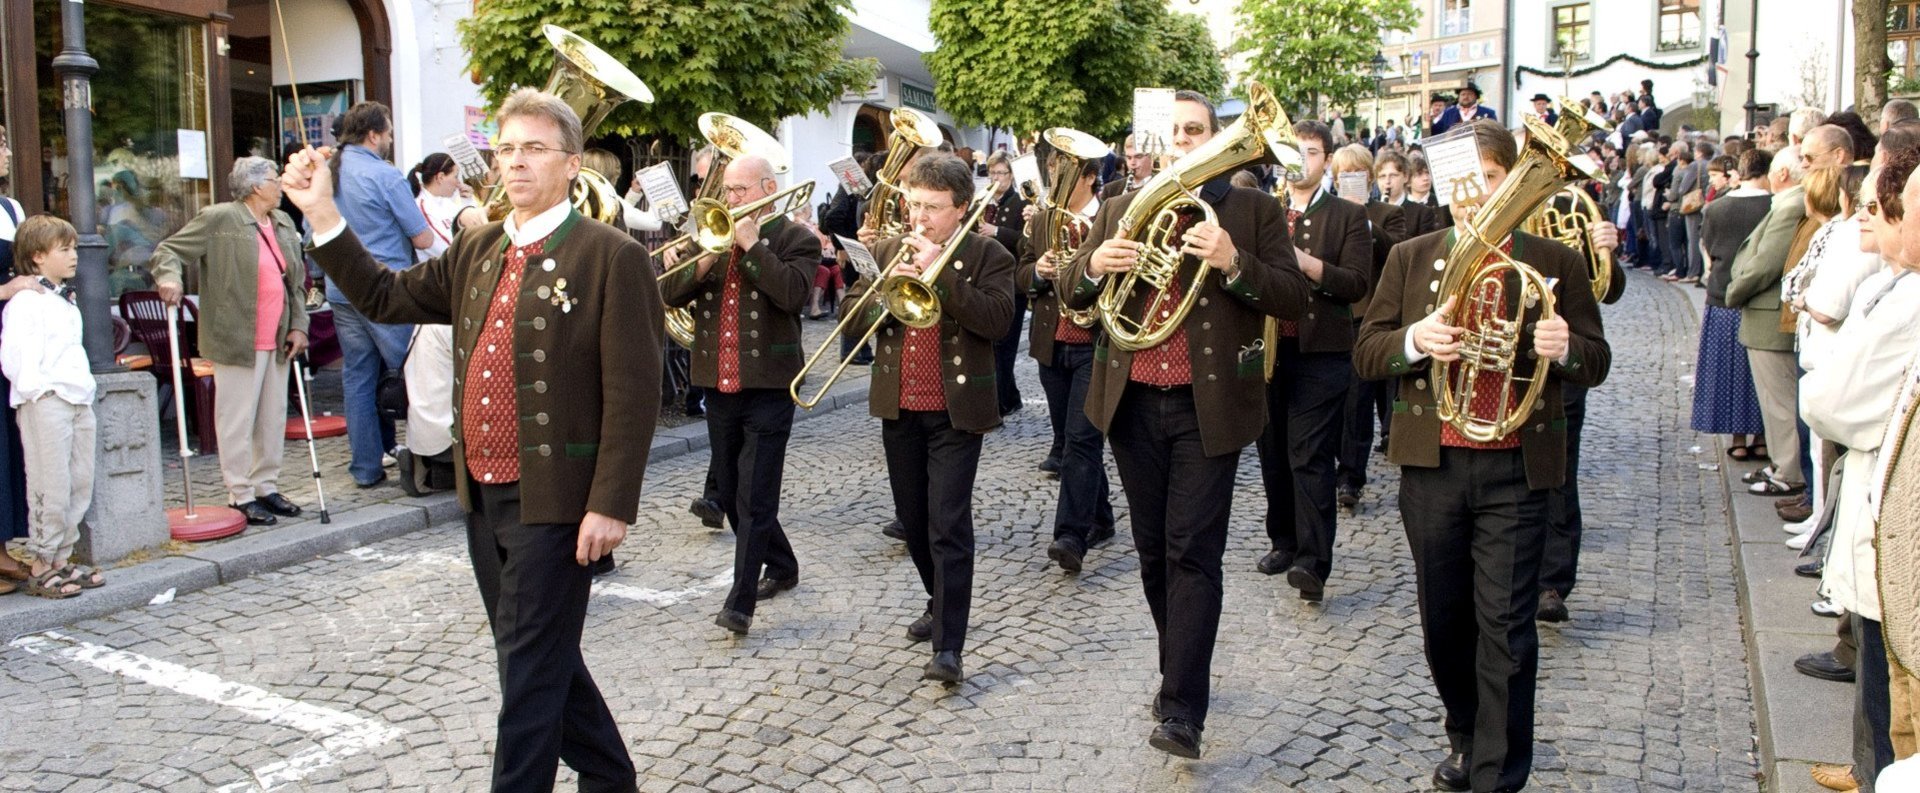 Eine Blaskapelle mit Dirigent zieht beim Pfingstfest die Marktstrasse von Bad Kötzting entlang.